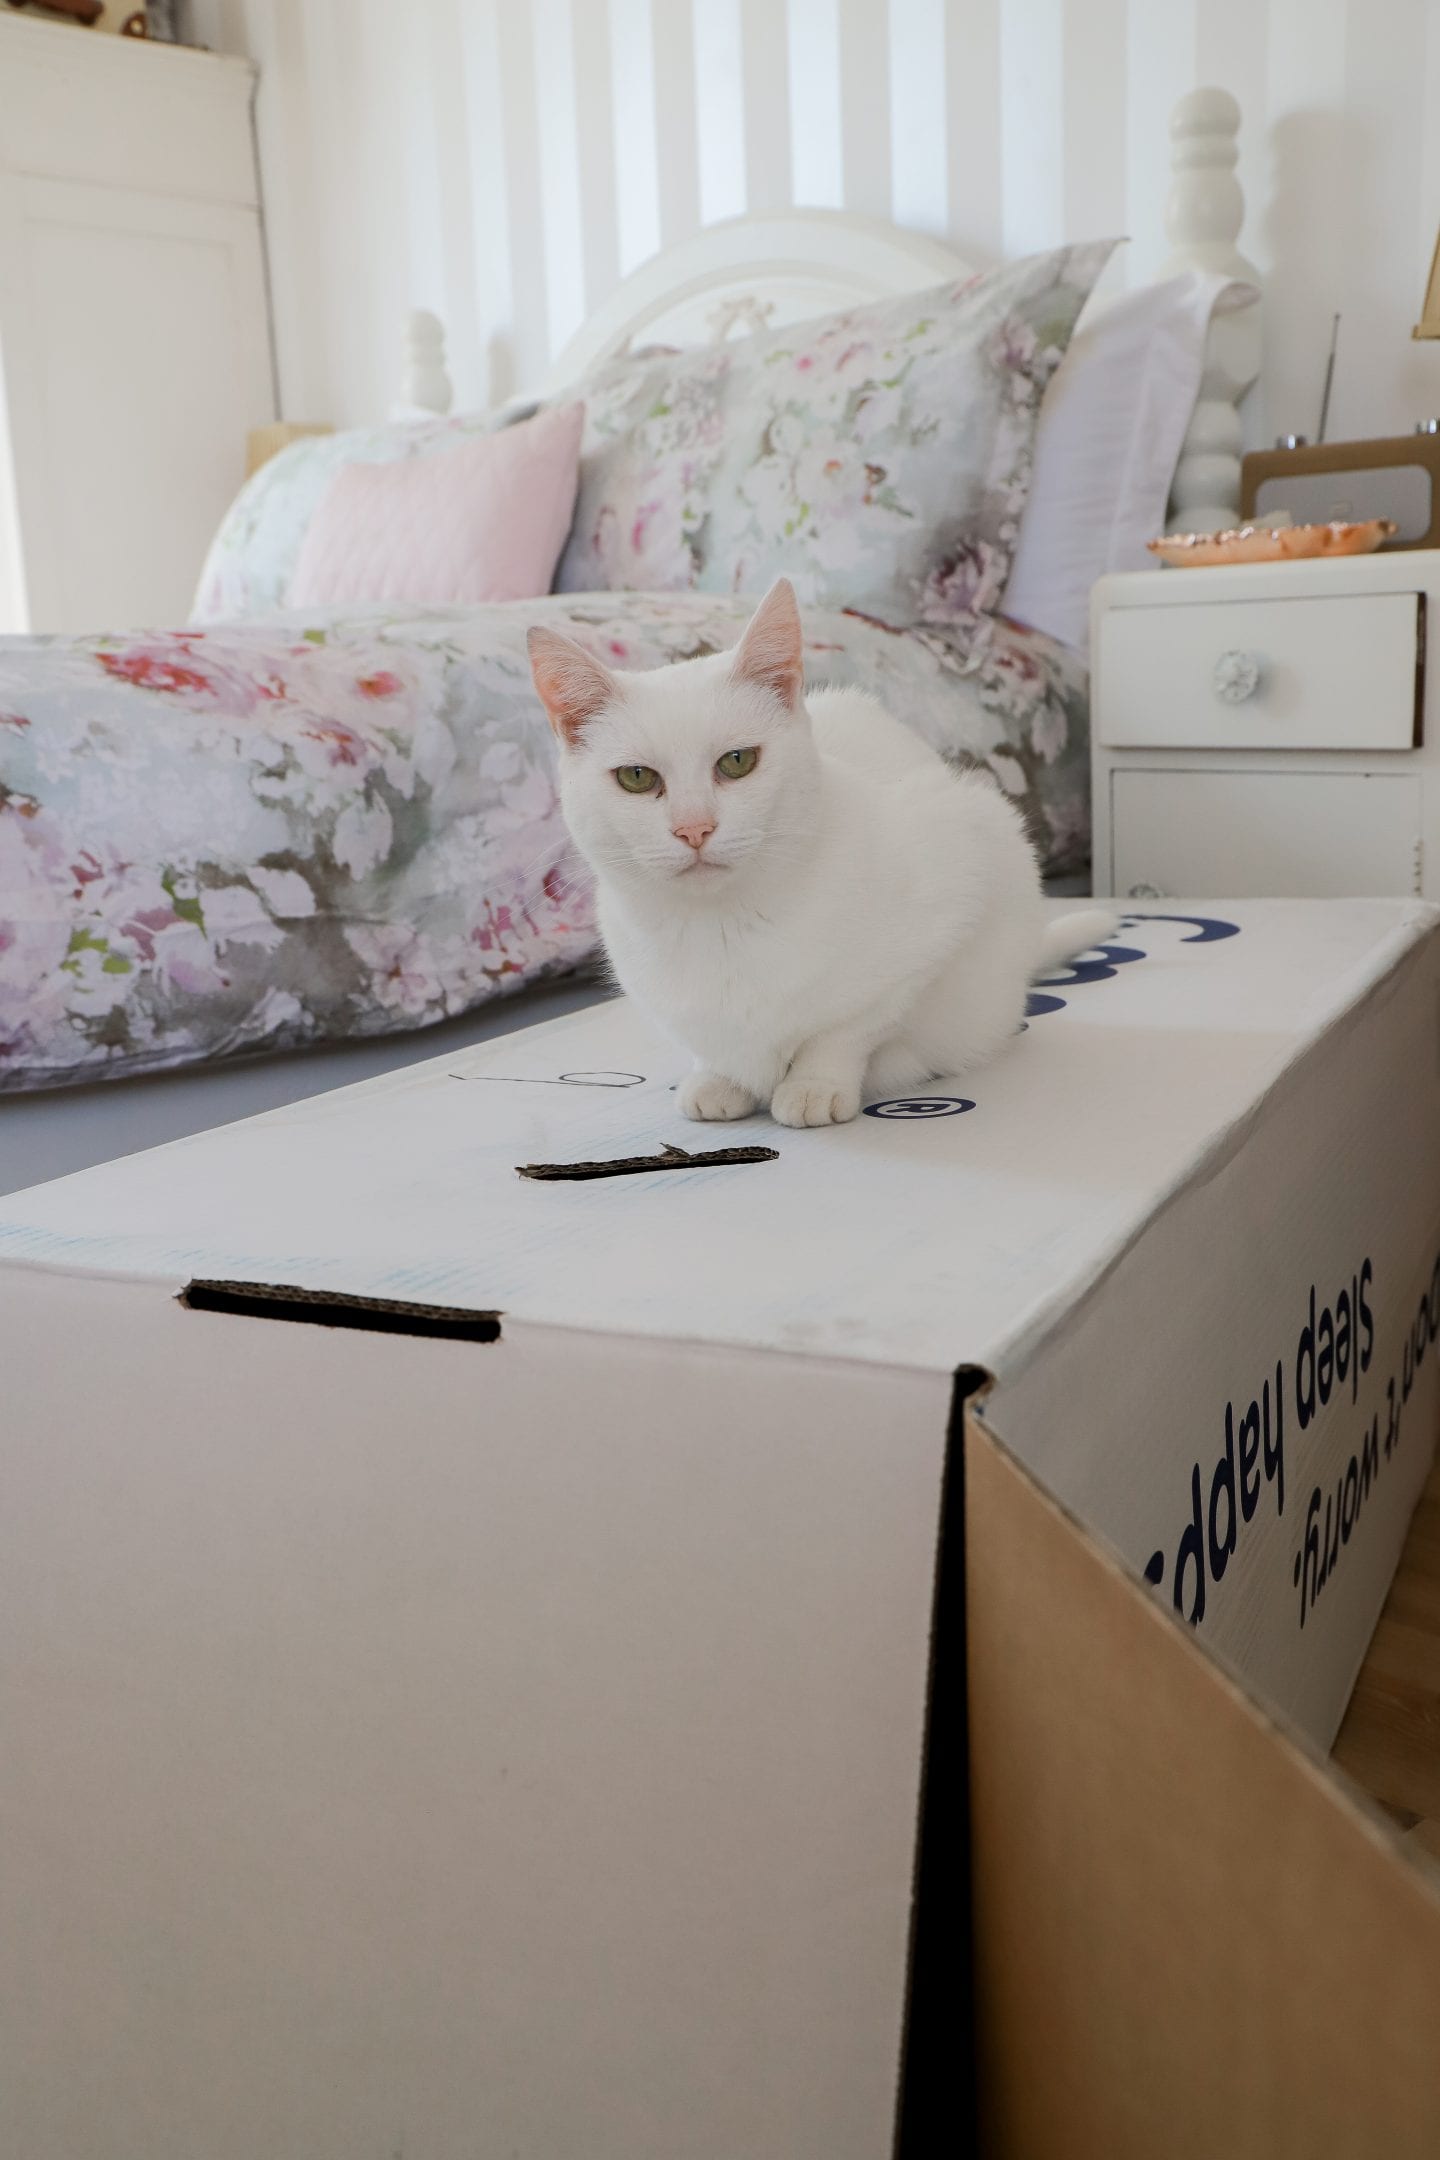 White cat on mattress box.